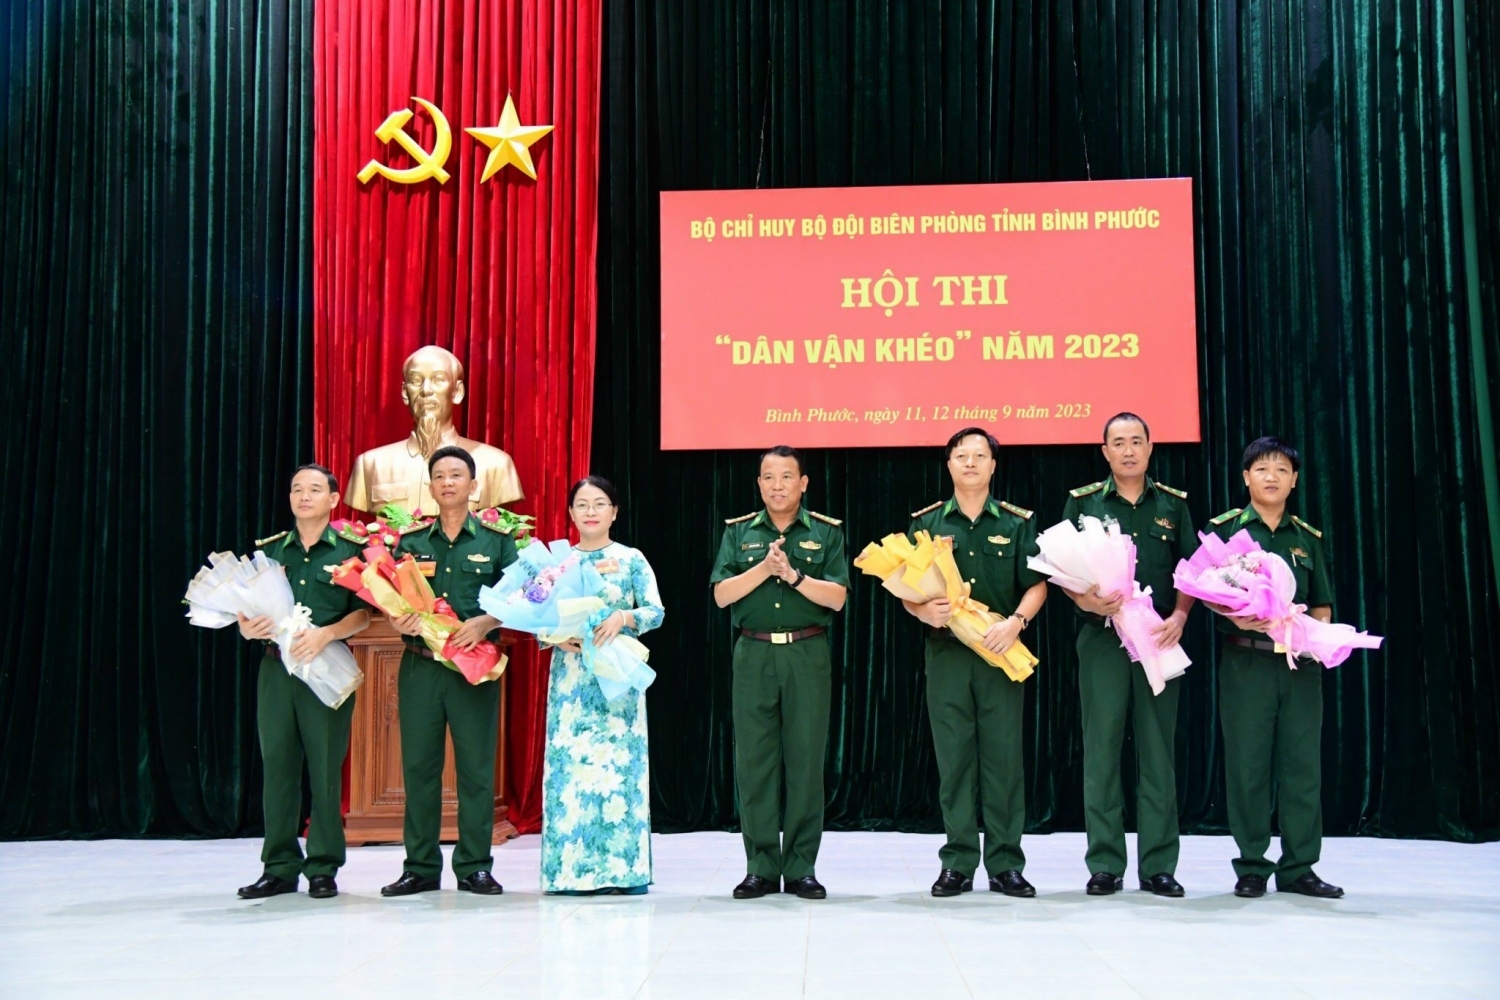 Đồng chí Hoàng Văn Thành, Bí thư Đảng ủy, Chính ủy BCH BĐBP tỉnh, Trưởng Ban tổ chức hội thi tặng hoa cho Ban Giám khảo